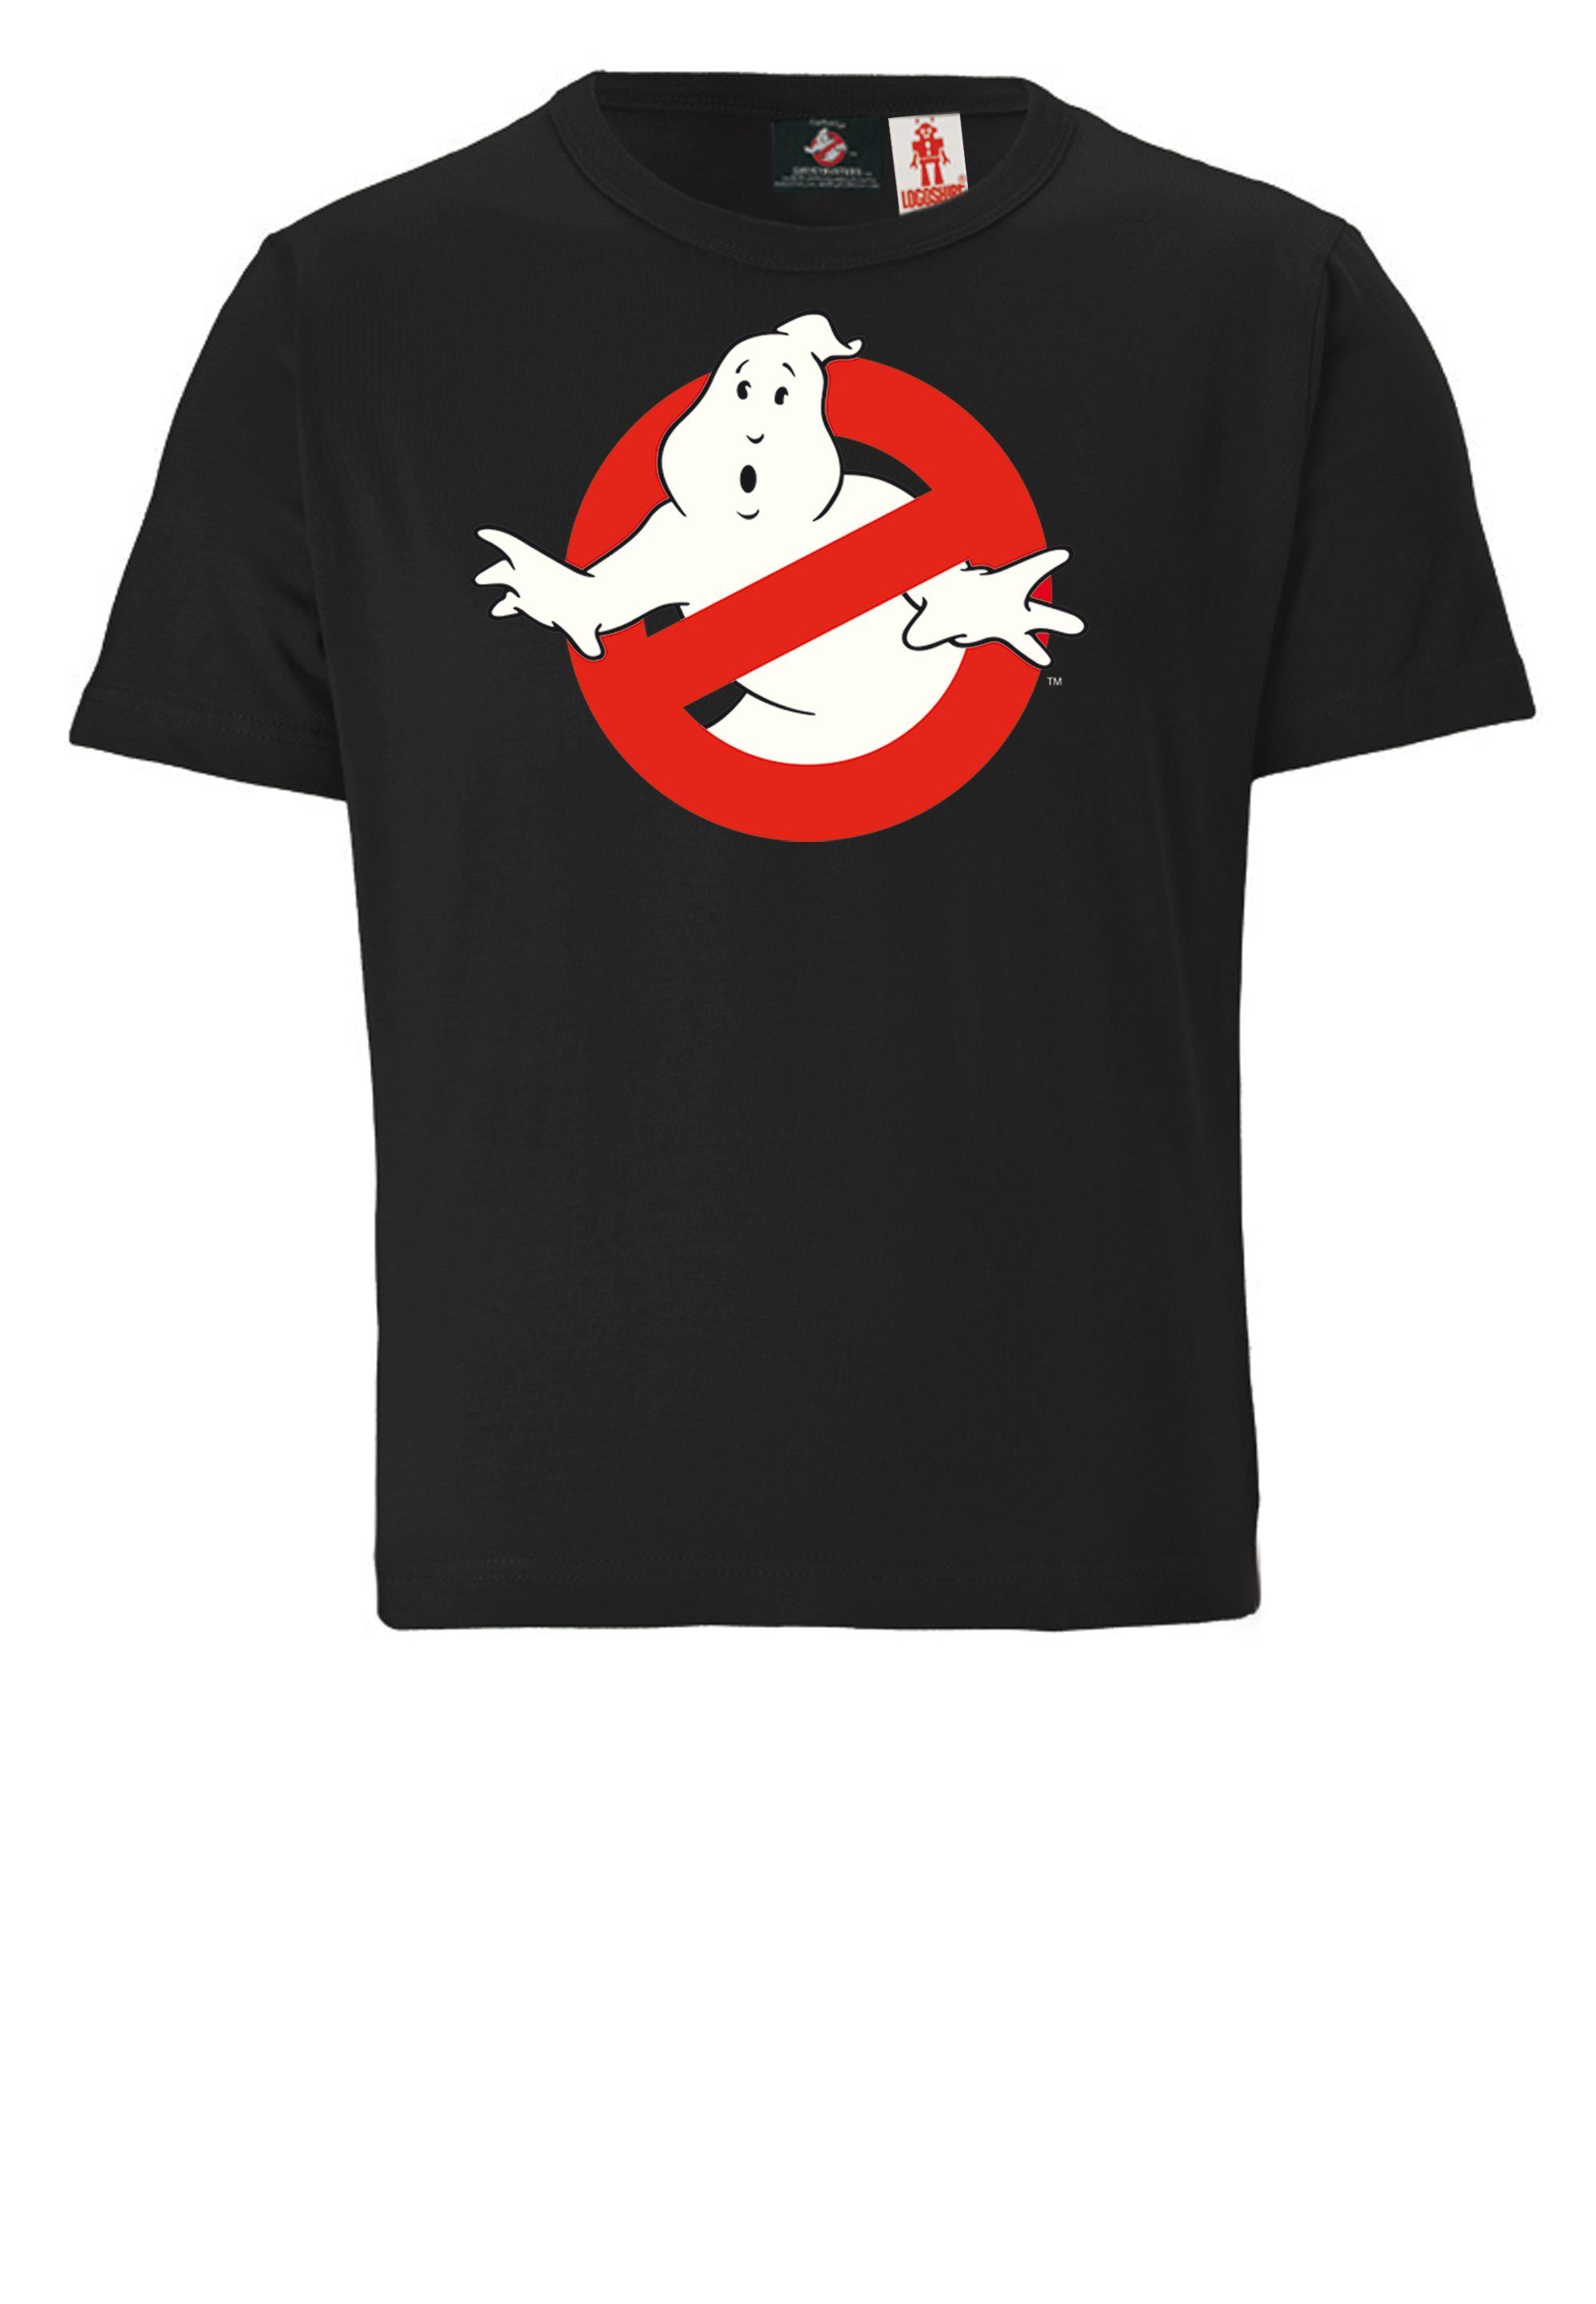 LOGOSHIRT T-Shirt lizenziertem mit Ghostbusters Design